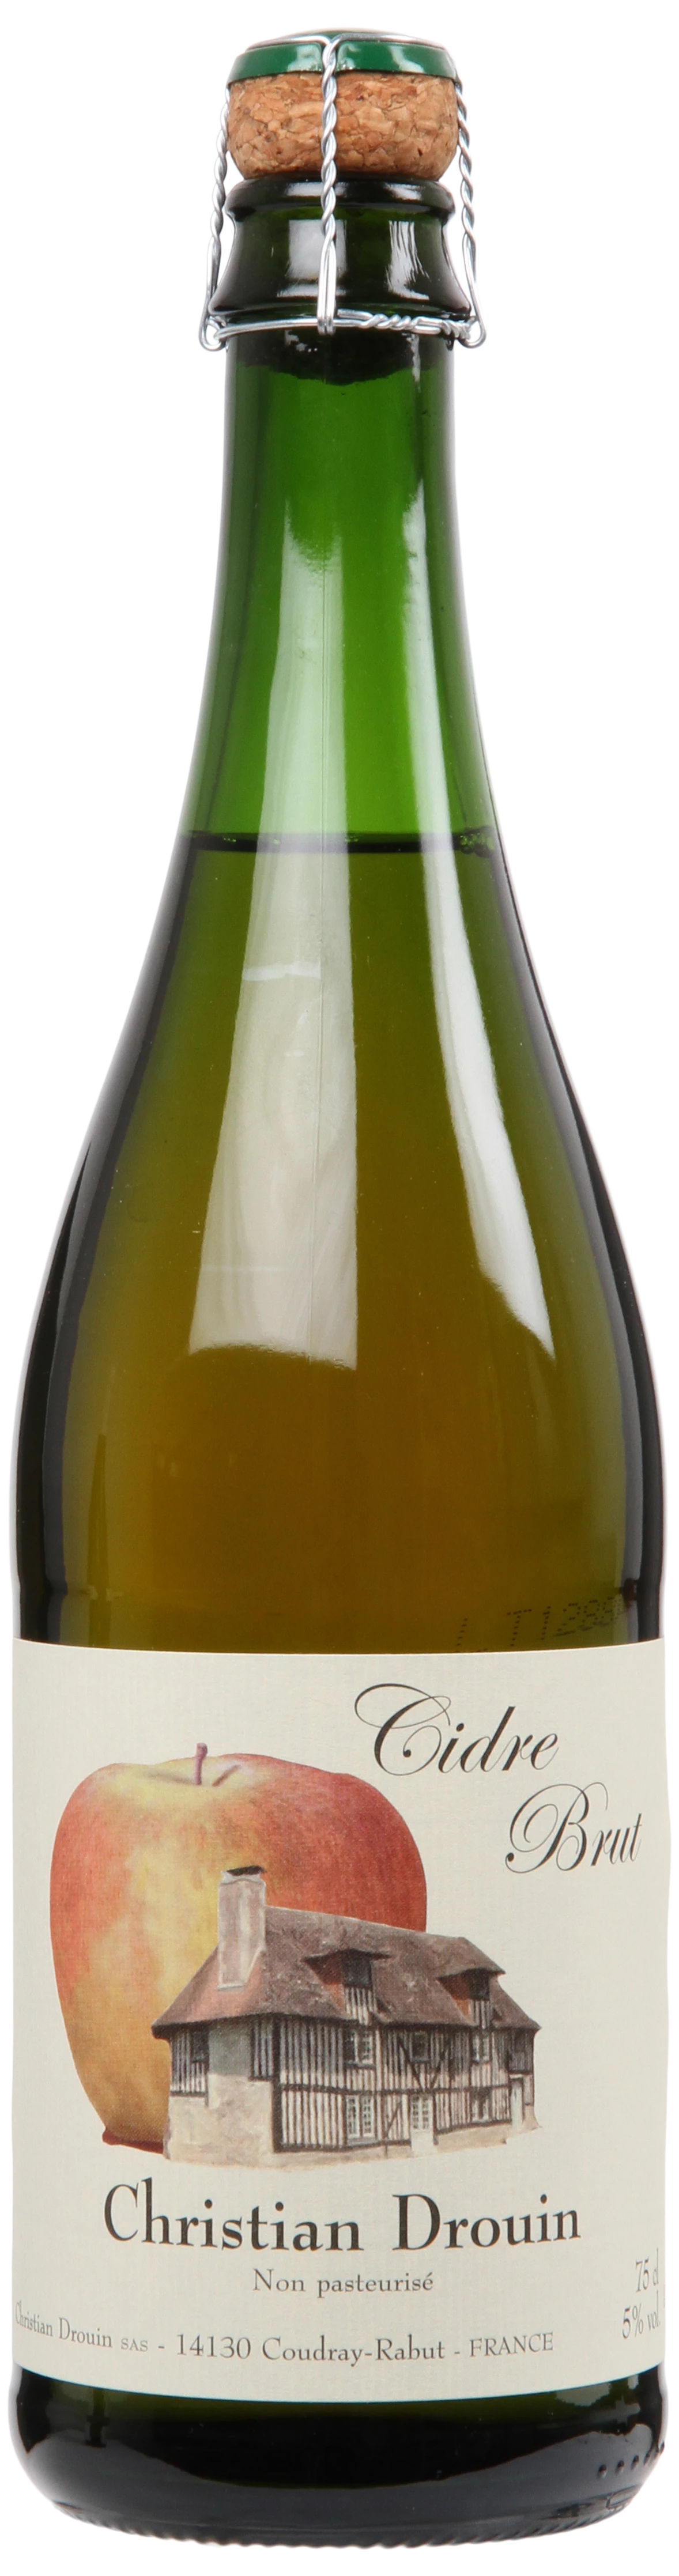 Løgismose Cider Christian Drouin Cidre Bouché Brut de Normandie NV - 221306